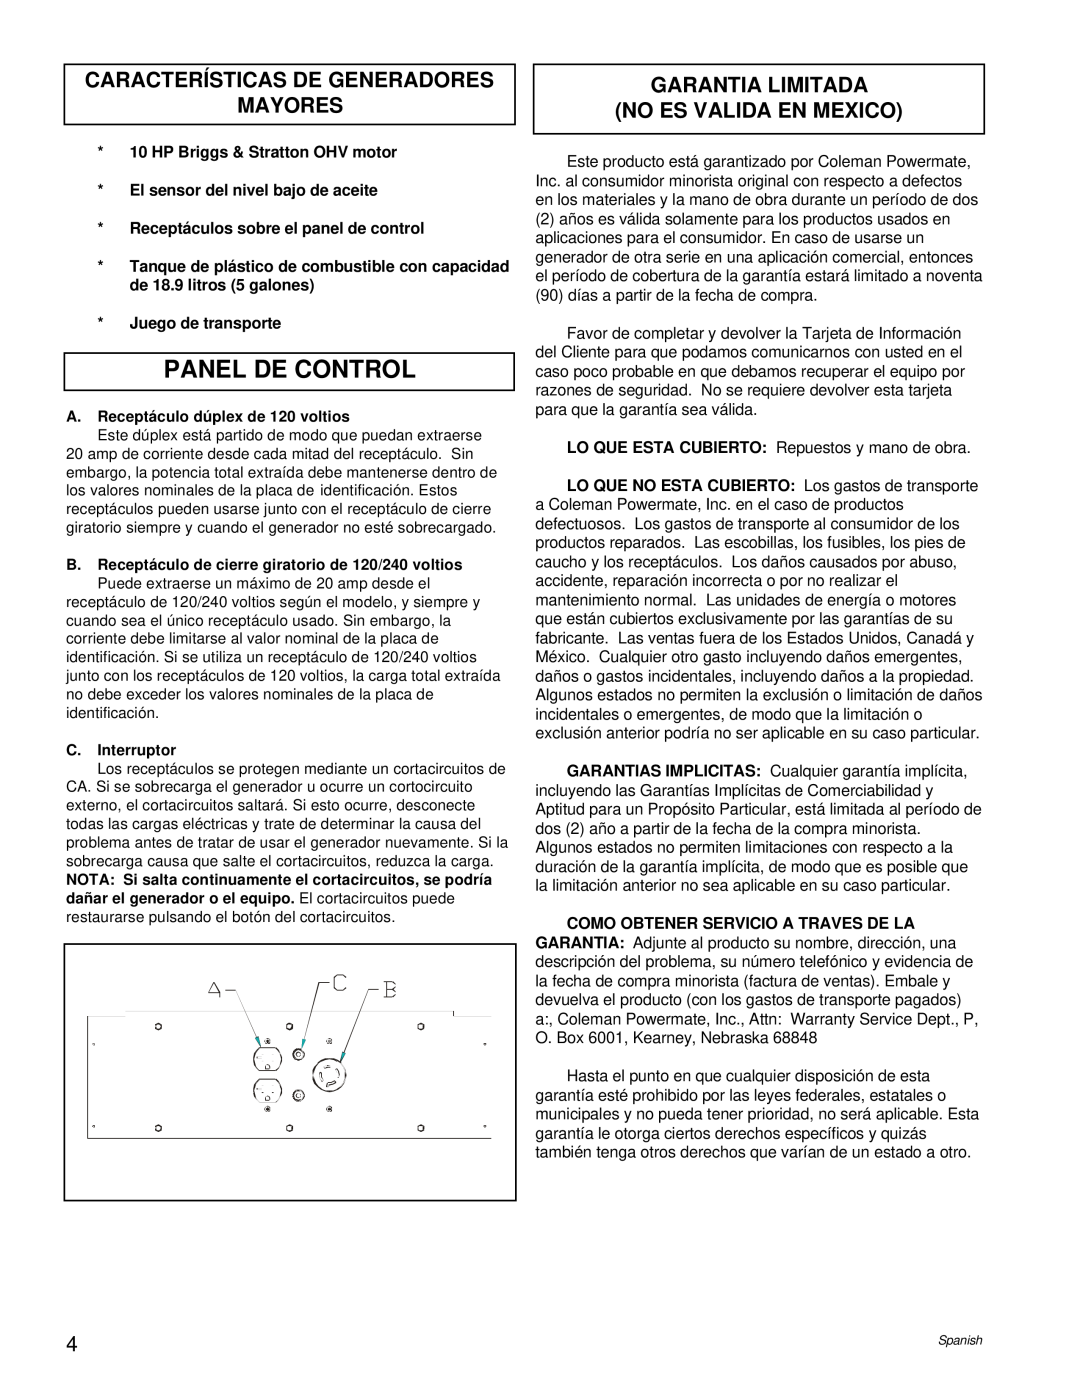 Powermate PM0545004.17 Panel De Control, Características De Generadores Mayores, Garantia Limitada No Es Valida En Mexico 